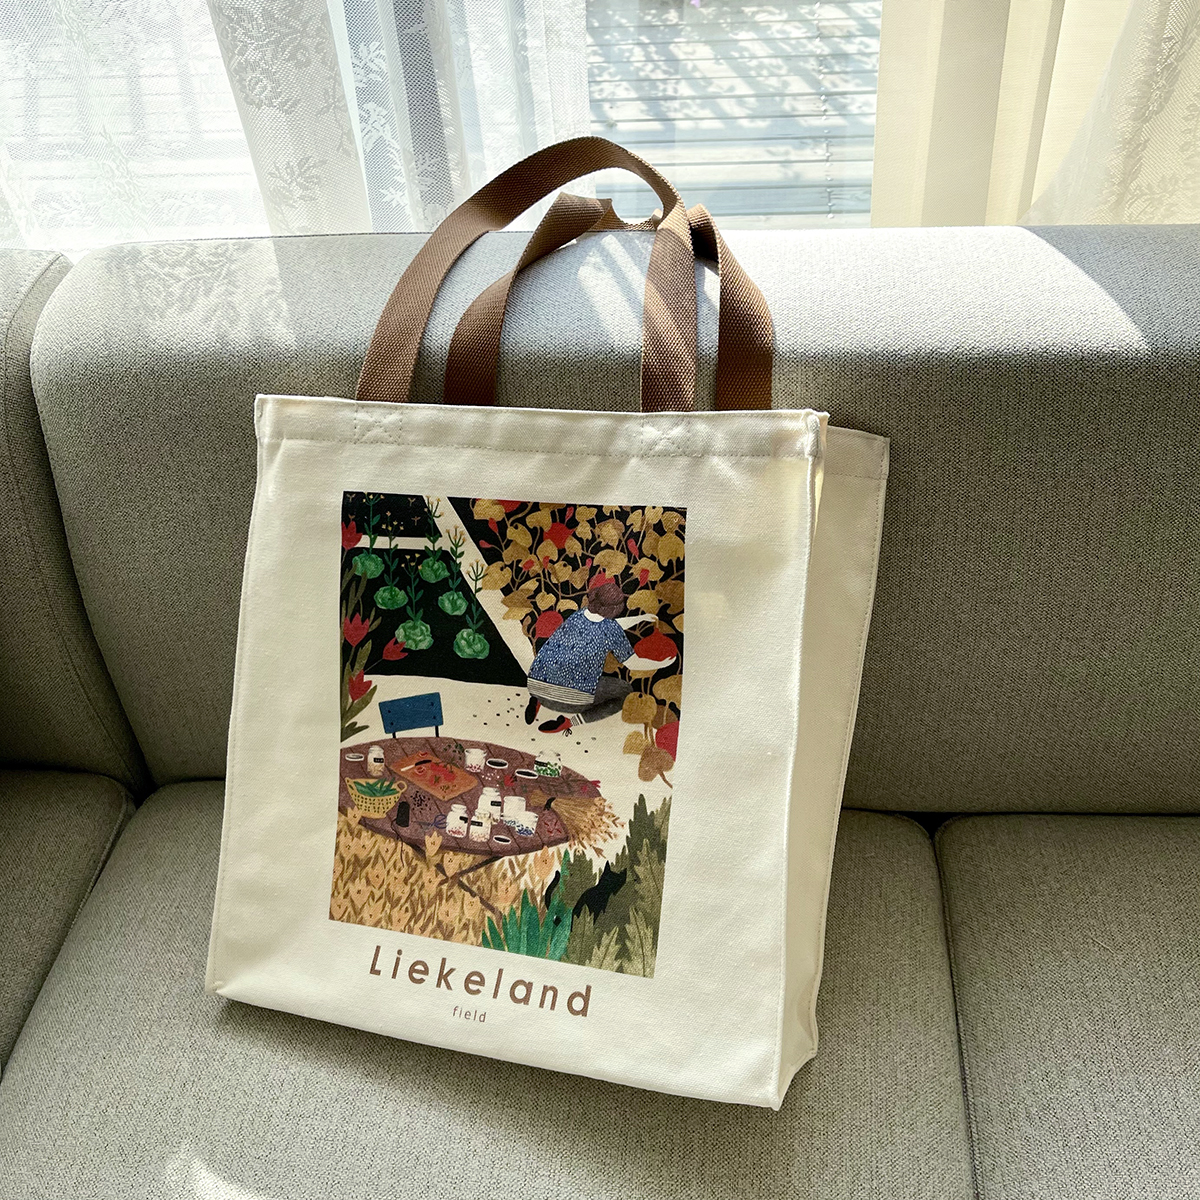 荷兰艺术家Liekeland插画帆布袋竖款治愈印花环保购物袋通勤女包-封面